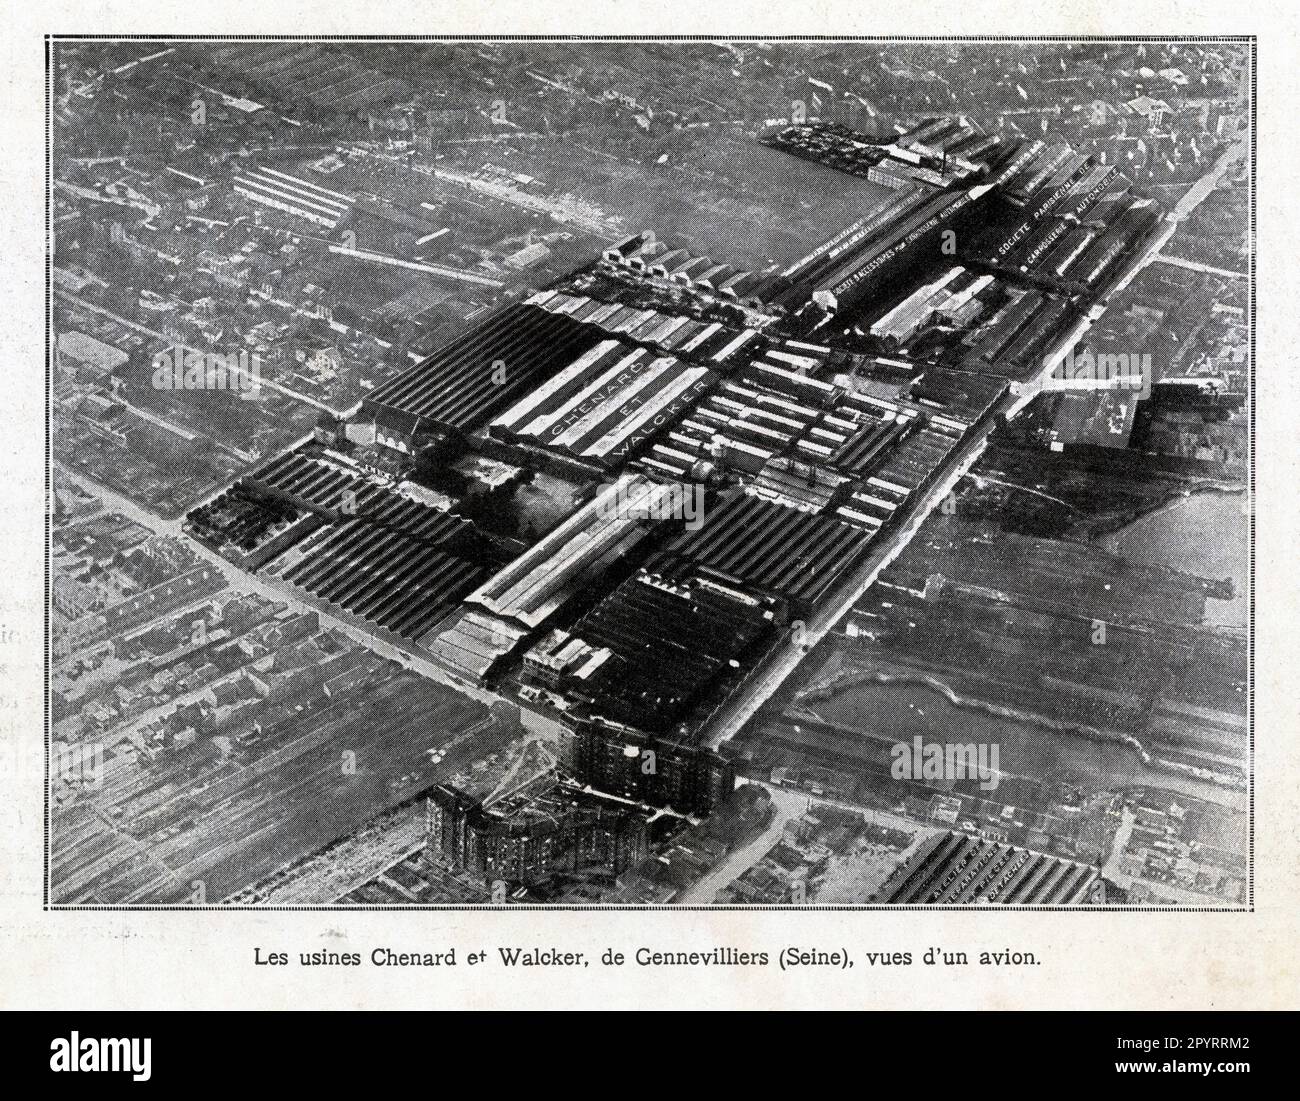 Les usines Chenard et Walcker , de Gennevilliers, Seine, vues d'un avion, 1929 Foto Stock